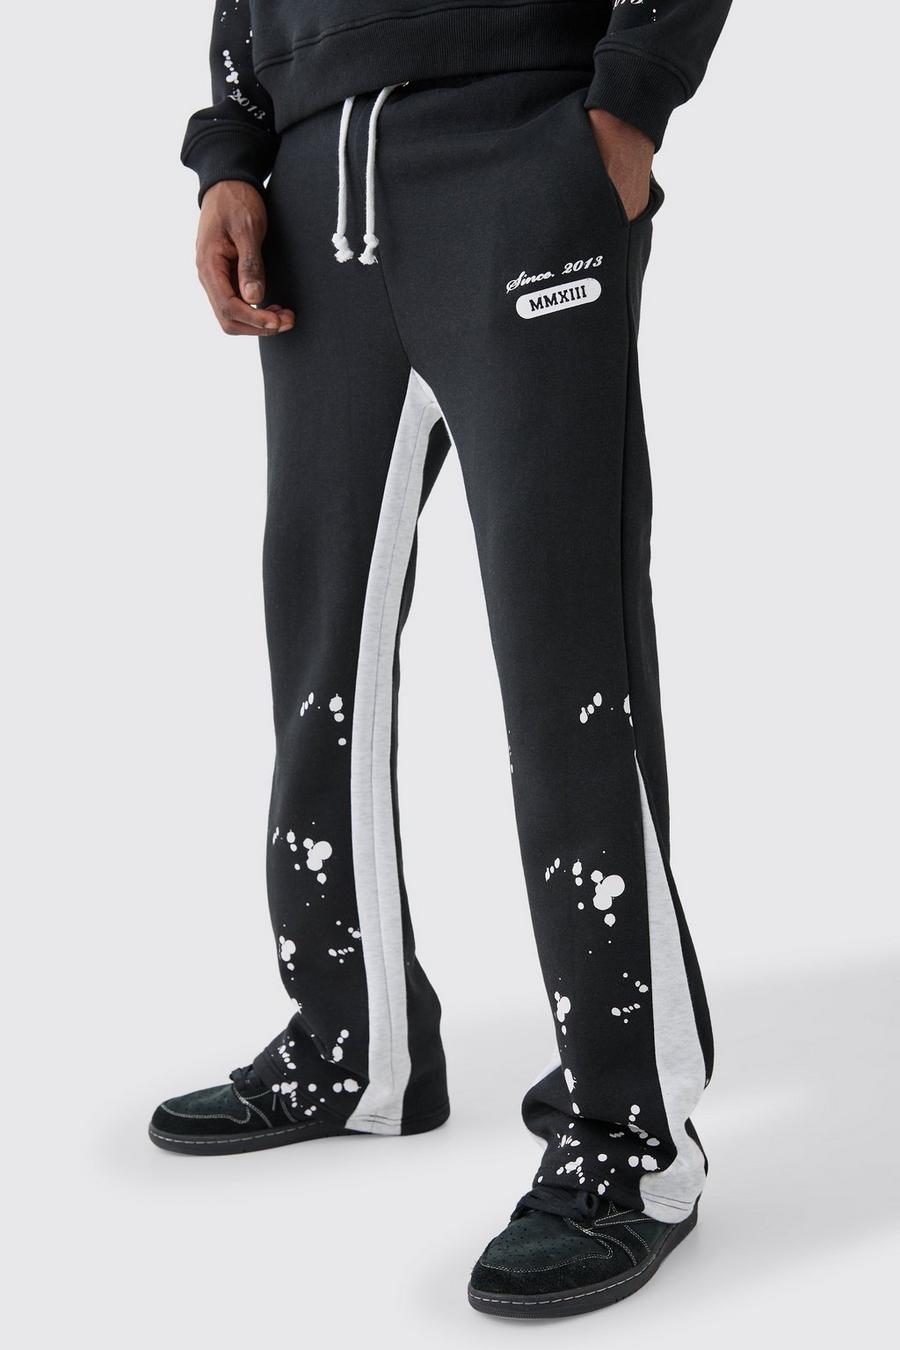 Pantaloni tuta Homme Slim Fit con inserti e schizzi di colore, Black image number 1